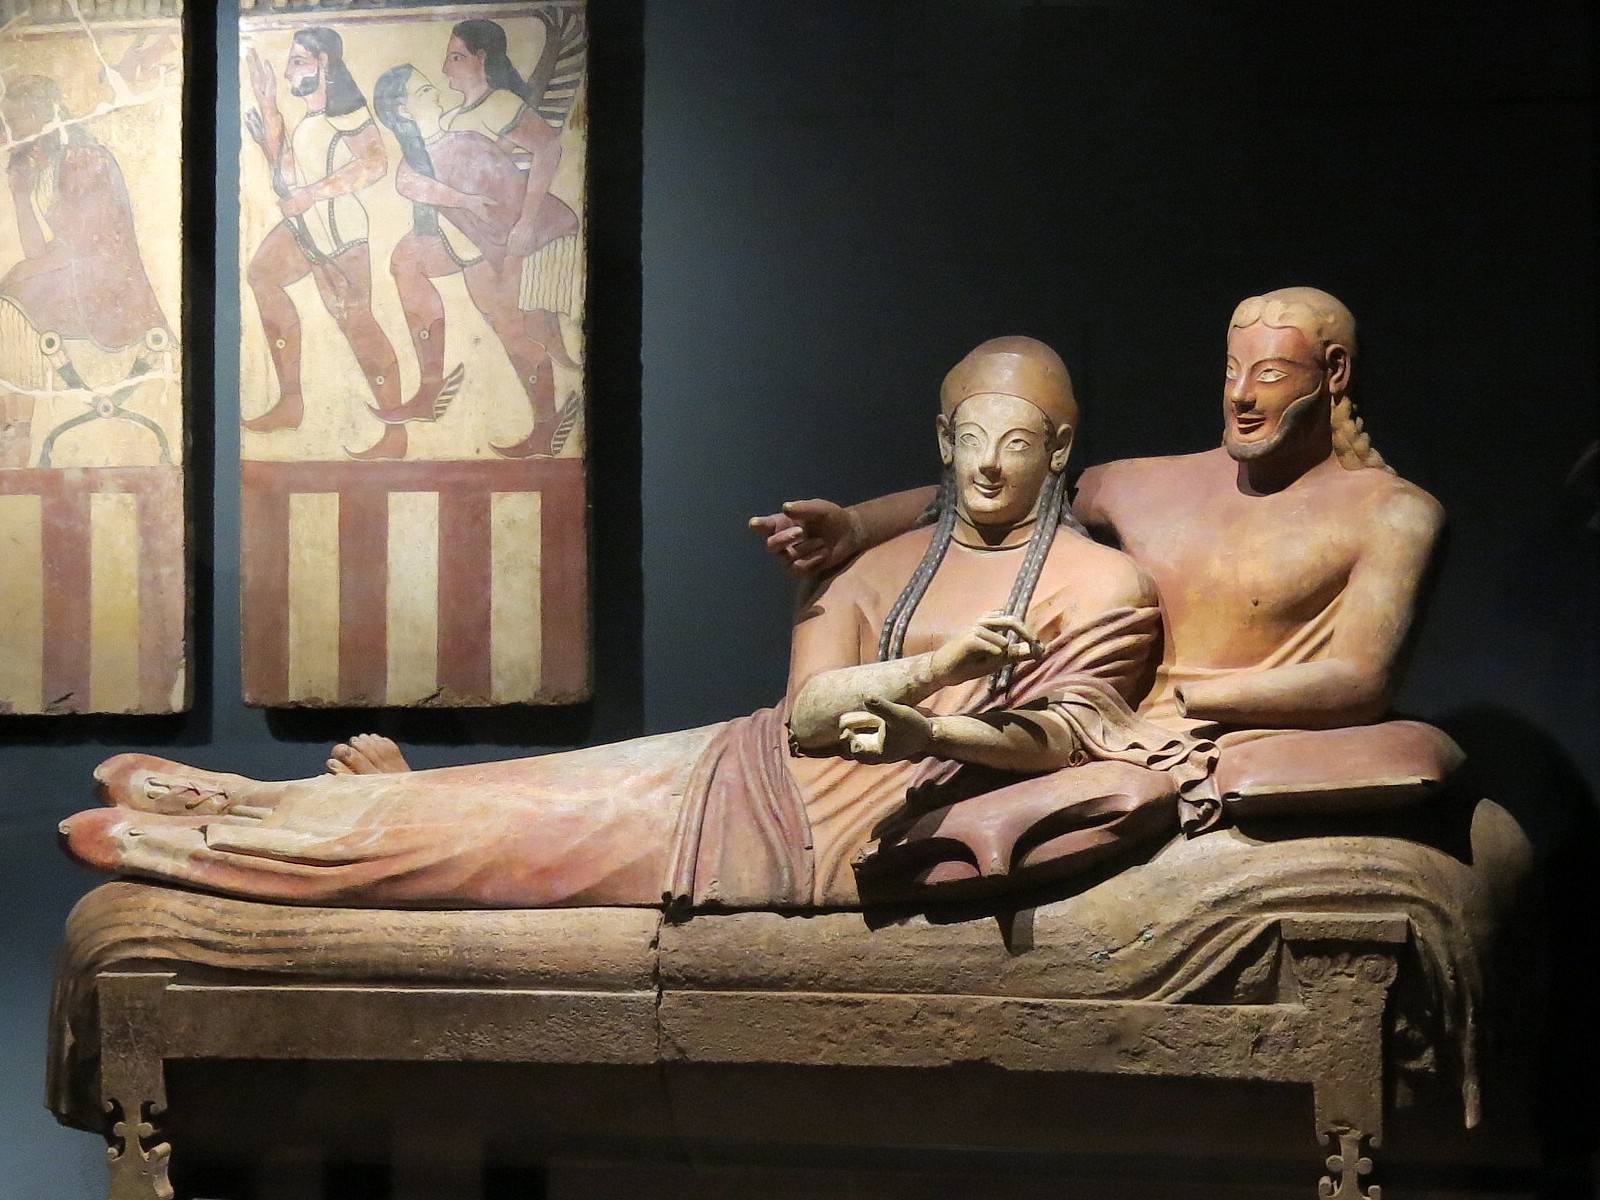 Les statues appelées Sarcophage des Époux étaient des urnes funéraires étrusques, représentant deux époux allongés ensemble comme lors d'un banquet. Cette célèbre statue est exposée au musée du Louvre, à Paris. © Tangopaso, Wikimedia Commons